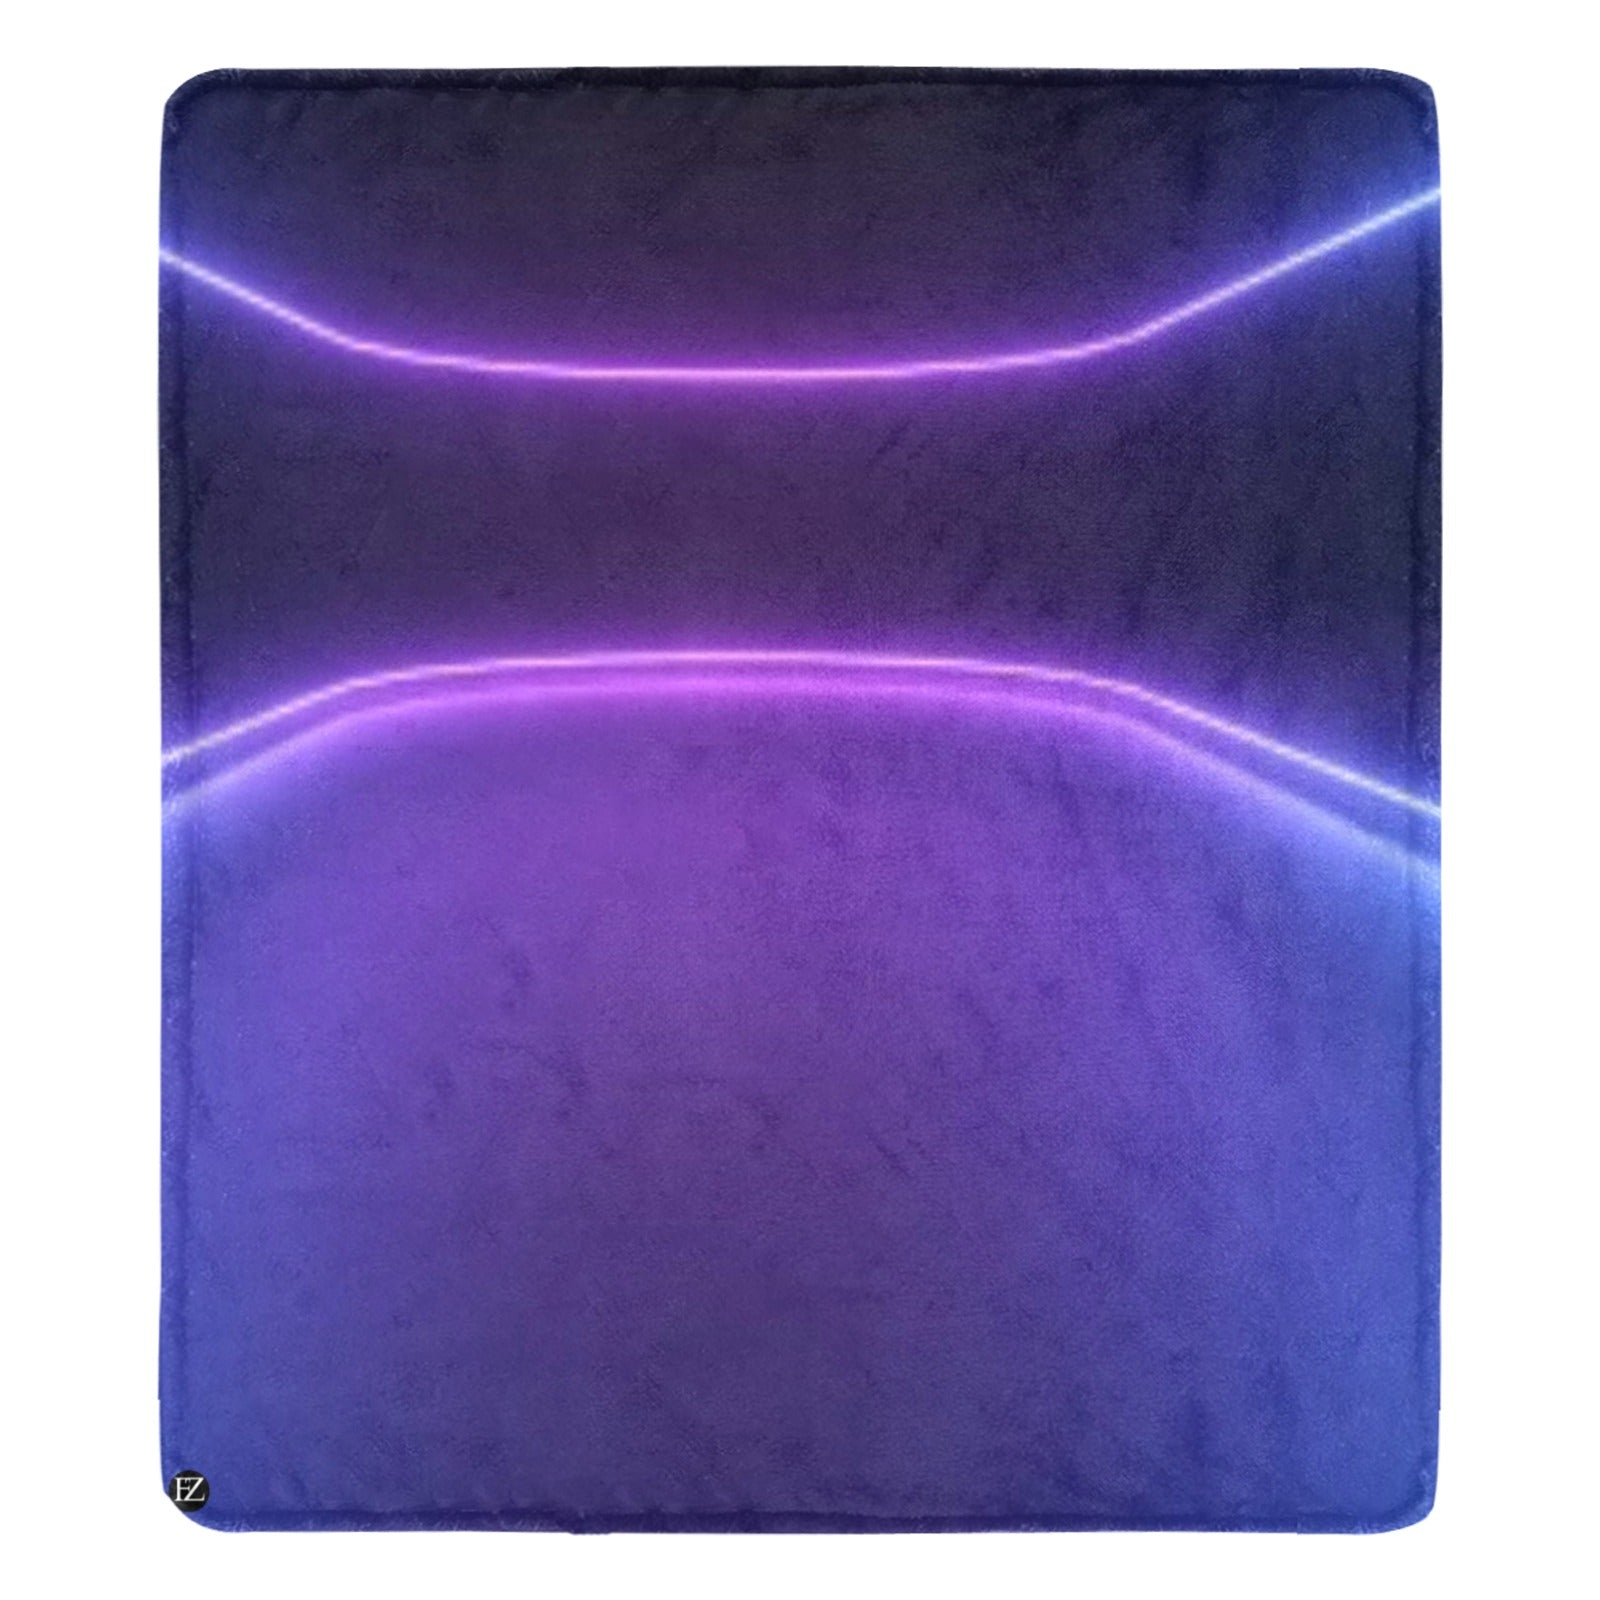 fz purple tye blanket ultra-soft micro fleece blanket 70"x80"